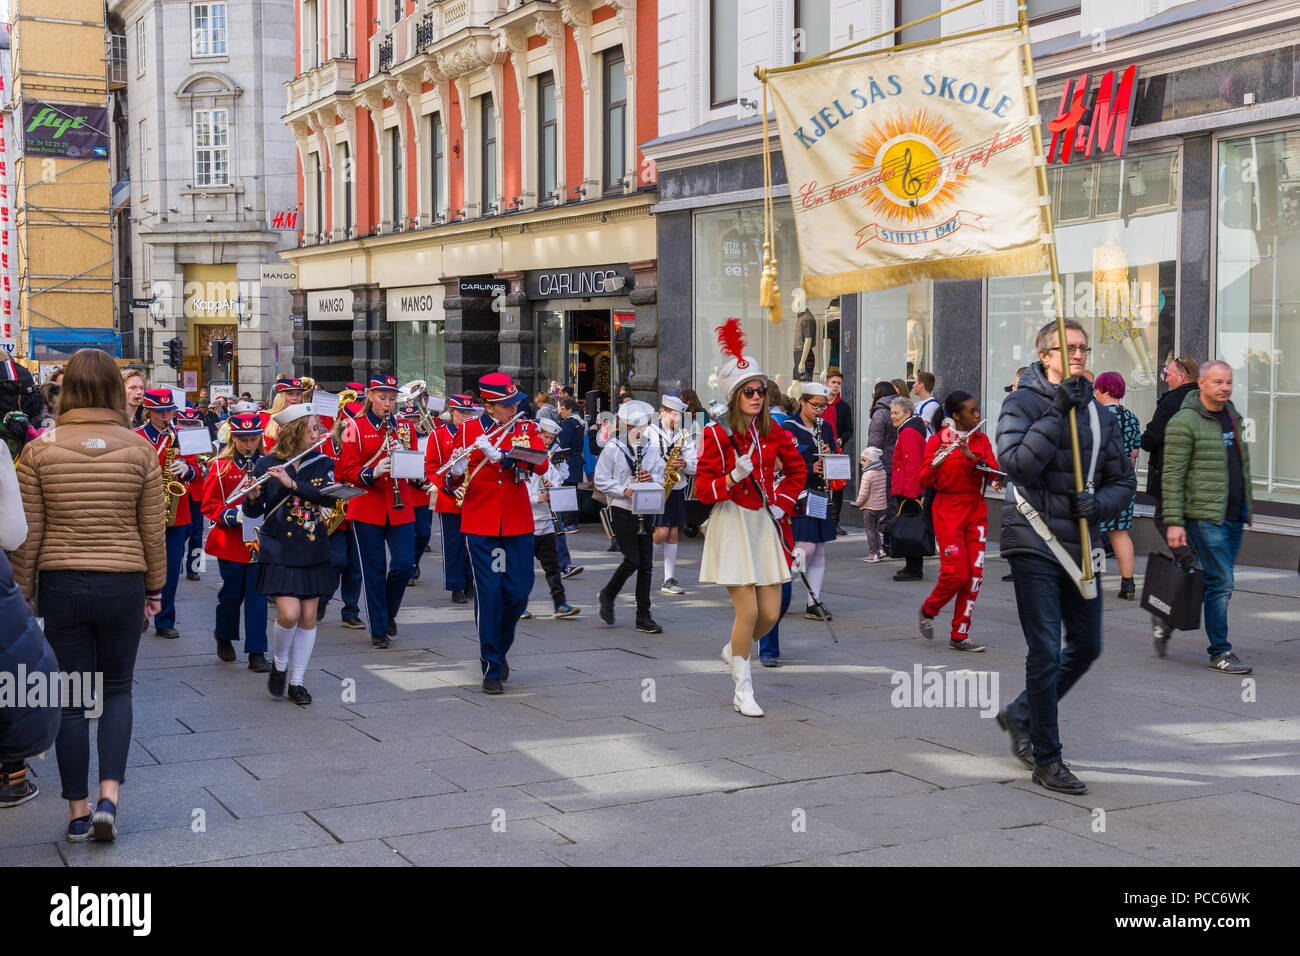 OSLO, Norvège 28 AVRIL 2018 : groupes musicaux parade dans les rues d'Oslo, Norvège Banque D'Images